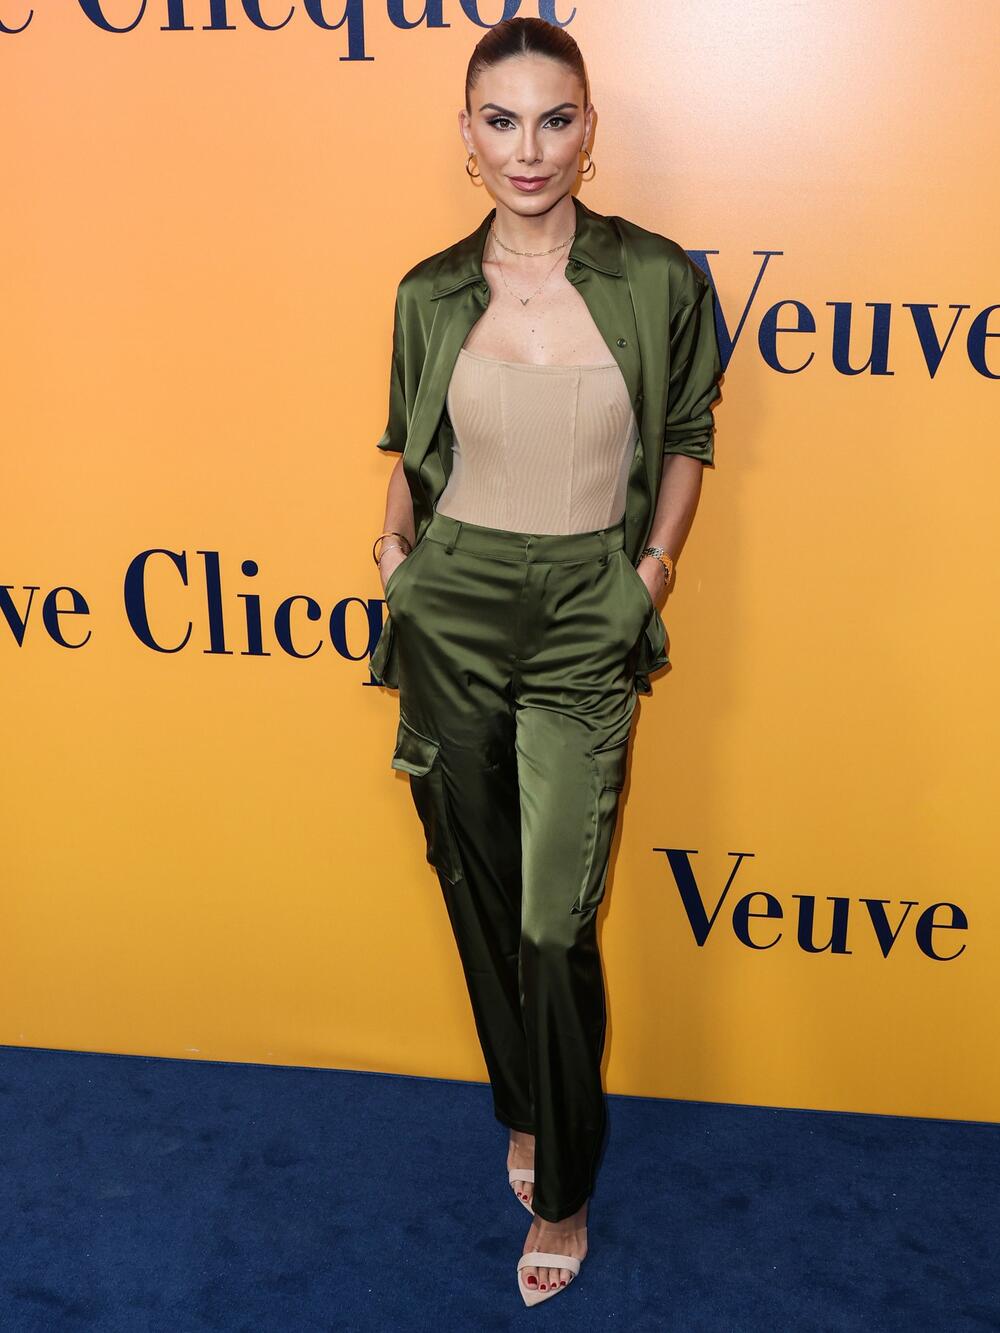 <p>Glumica i voditeljka Nina Seničar se na "Vanity Fair" žurci pojavila u izazovnoj zelenoj haljini.</p>